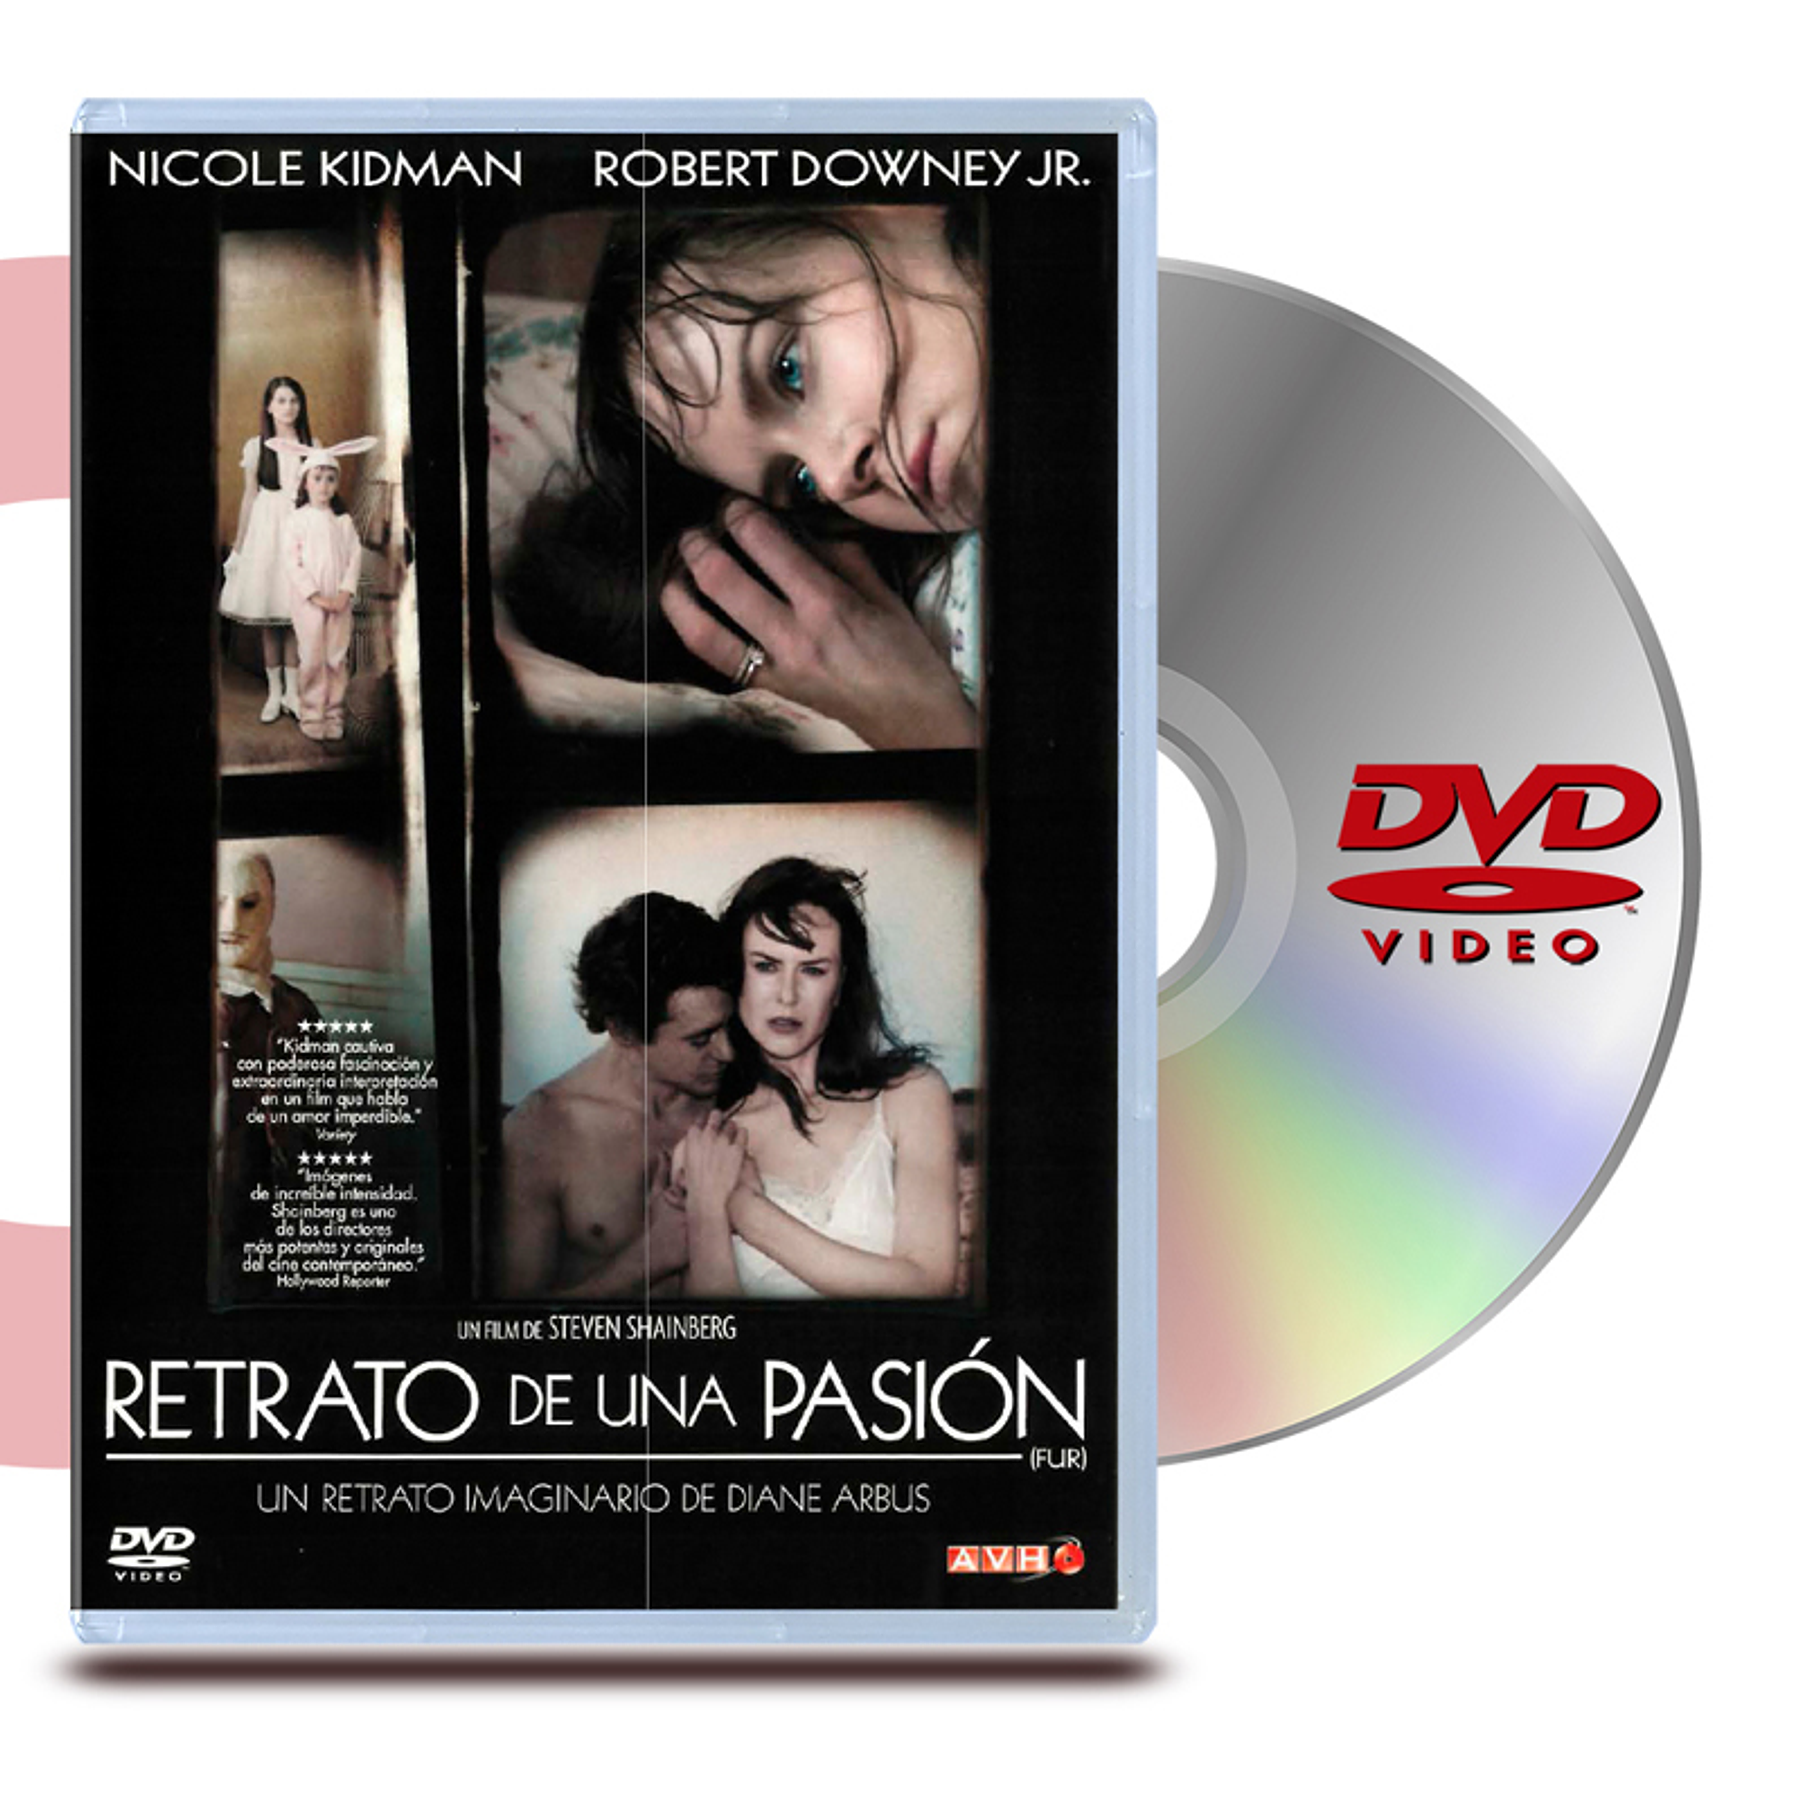 DVD RETRATO DE UNA PASIÓN